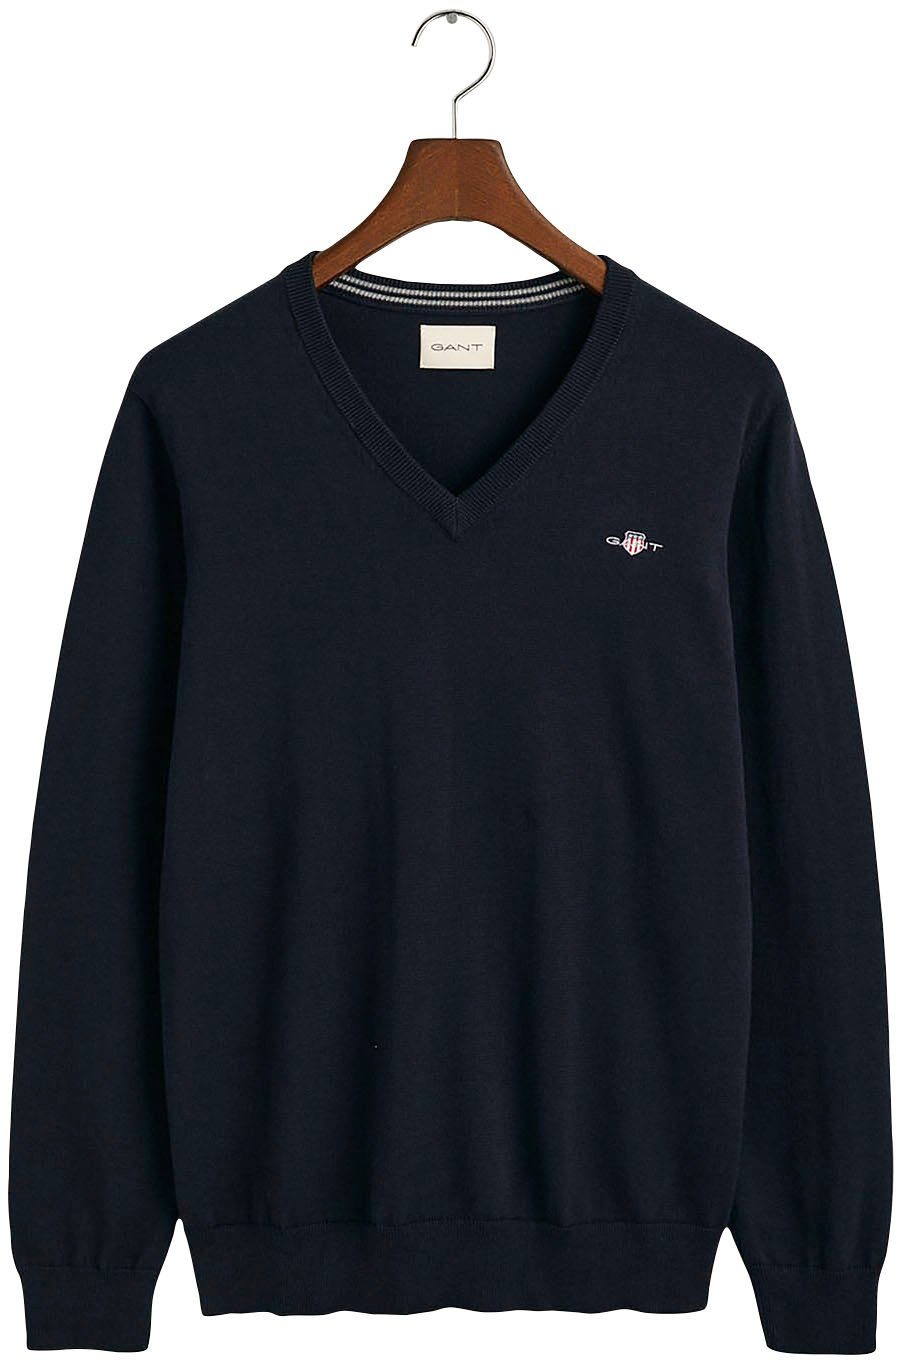 Evening Classic aus Premium Gant 100% Baumwolle, Übergangspullover V-Neck Cotton Strickjersey weicher blue V-Ausschnitt-Pullover